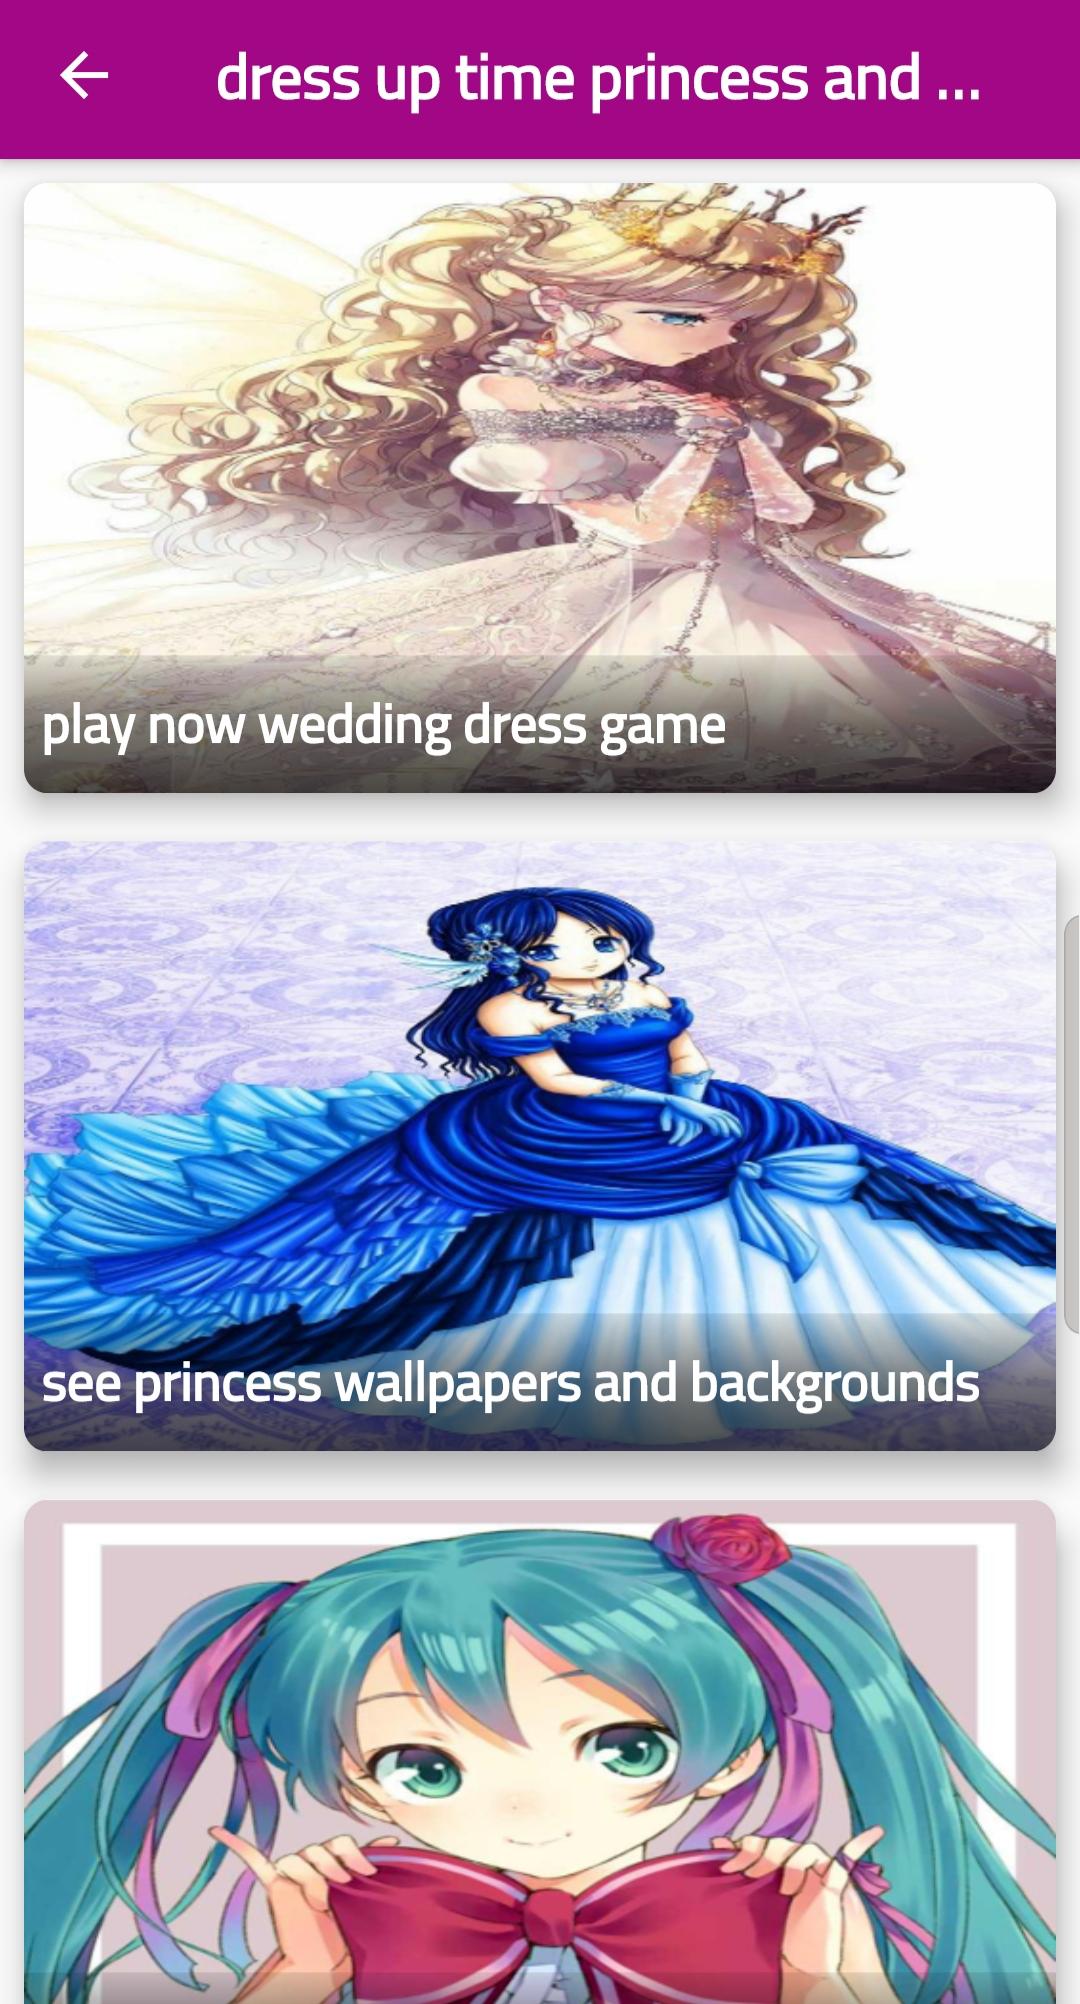 dress up time princess and dress up anime 2 Screenshot 1